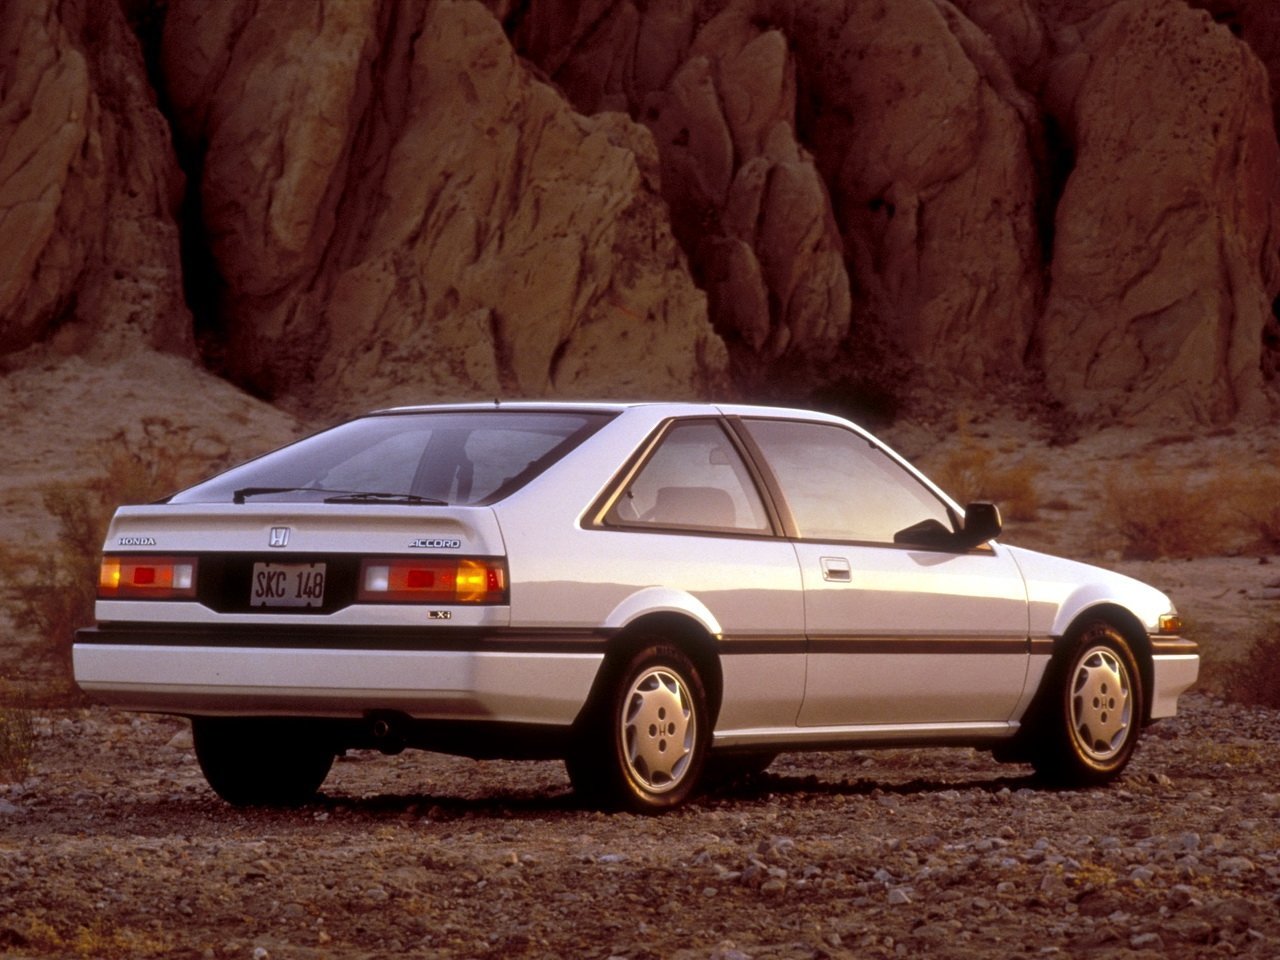 хэтчбек 3 дв. Honda Accord 1985 - 1989г выпуска модификация 1.6 MT (88 л.с.)